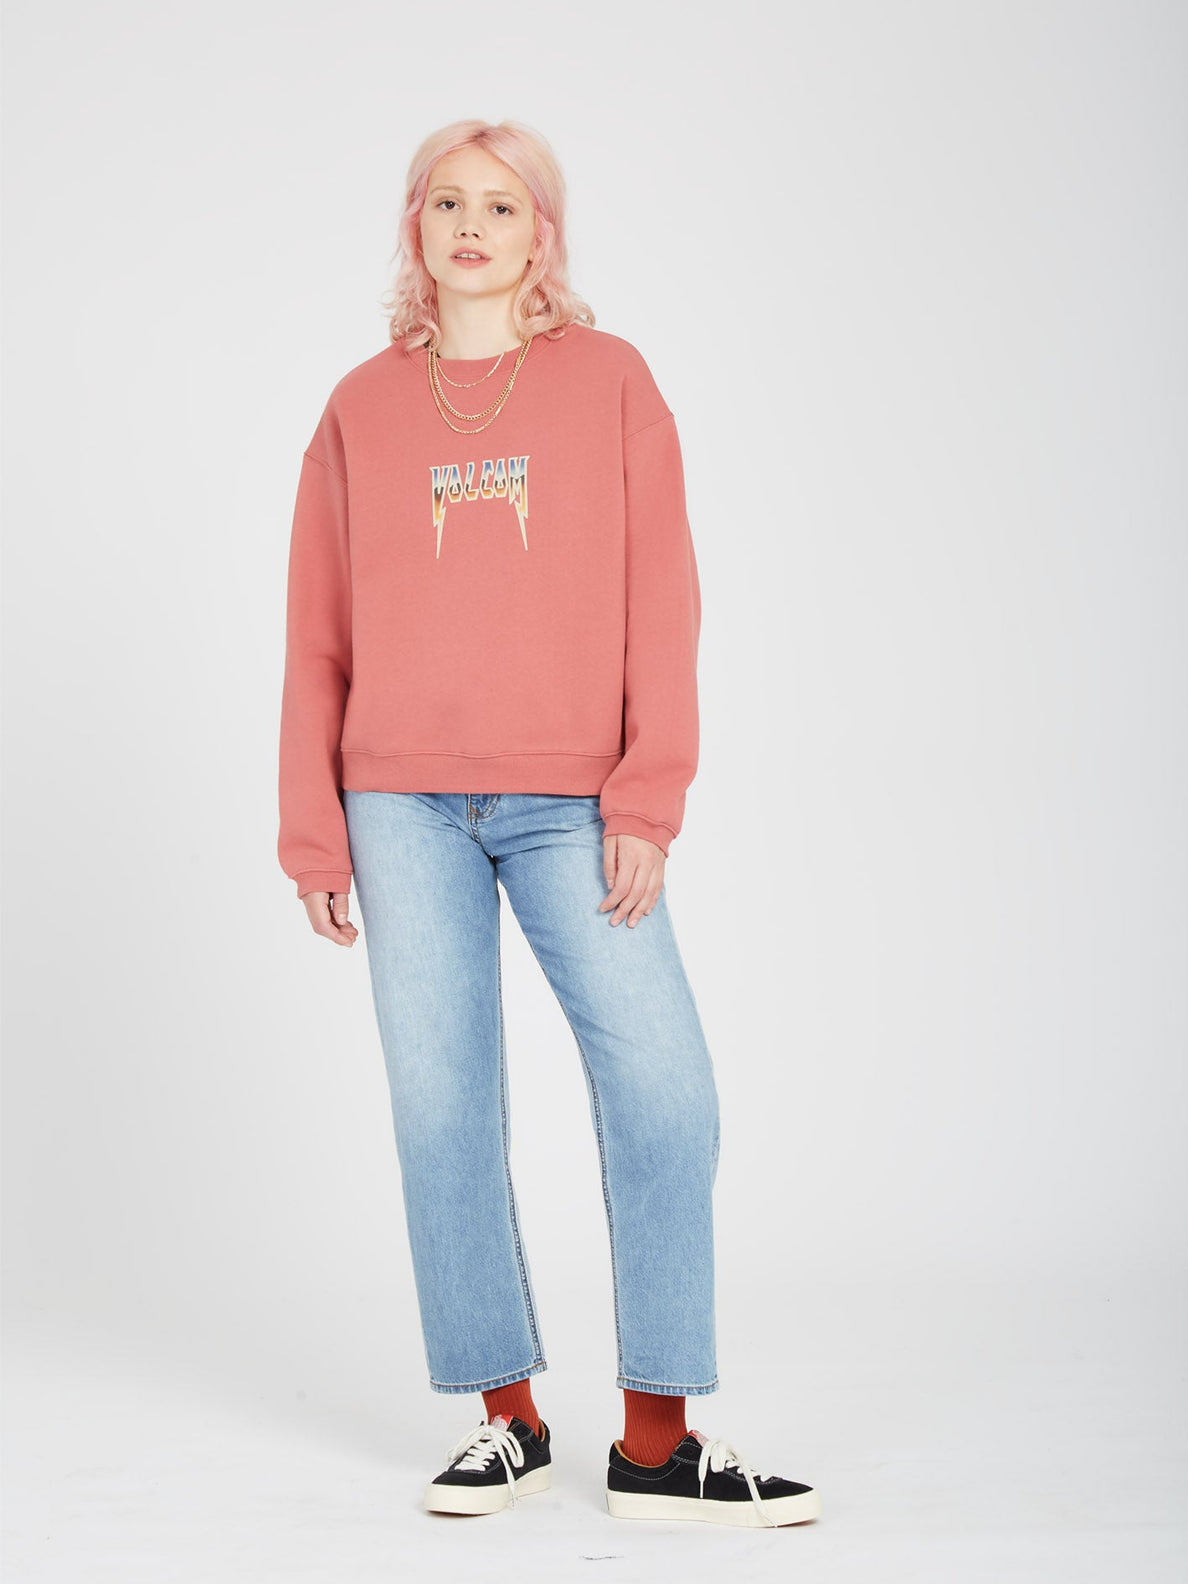 Ich suche ein Sweatshirt mit Rundhalsausschnitt – Rosewood | Damen-Sweatshirts | Meistverkaufte Produkte | Neue Produkte | Neueste Produkte | Sammlung_Zalando | Volcom-Shop | surfdevils.com